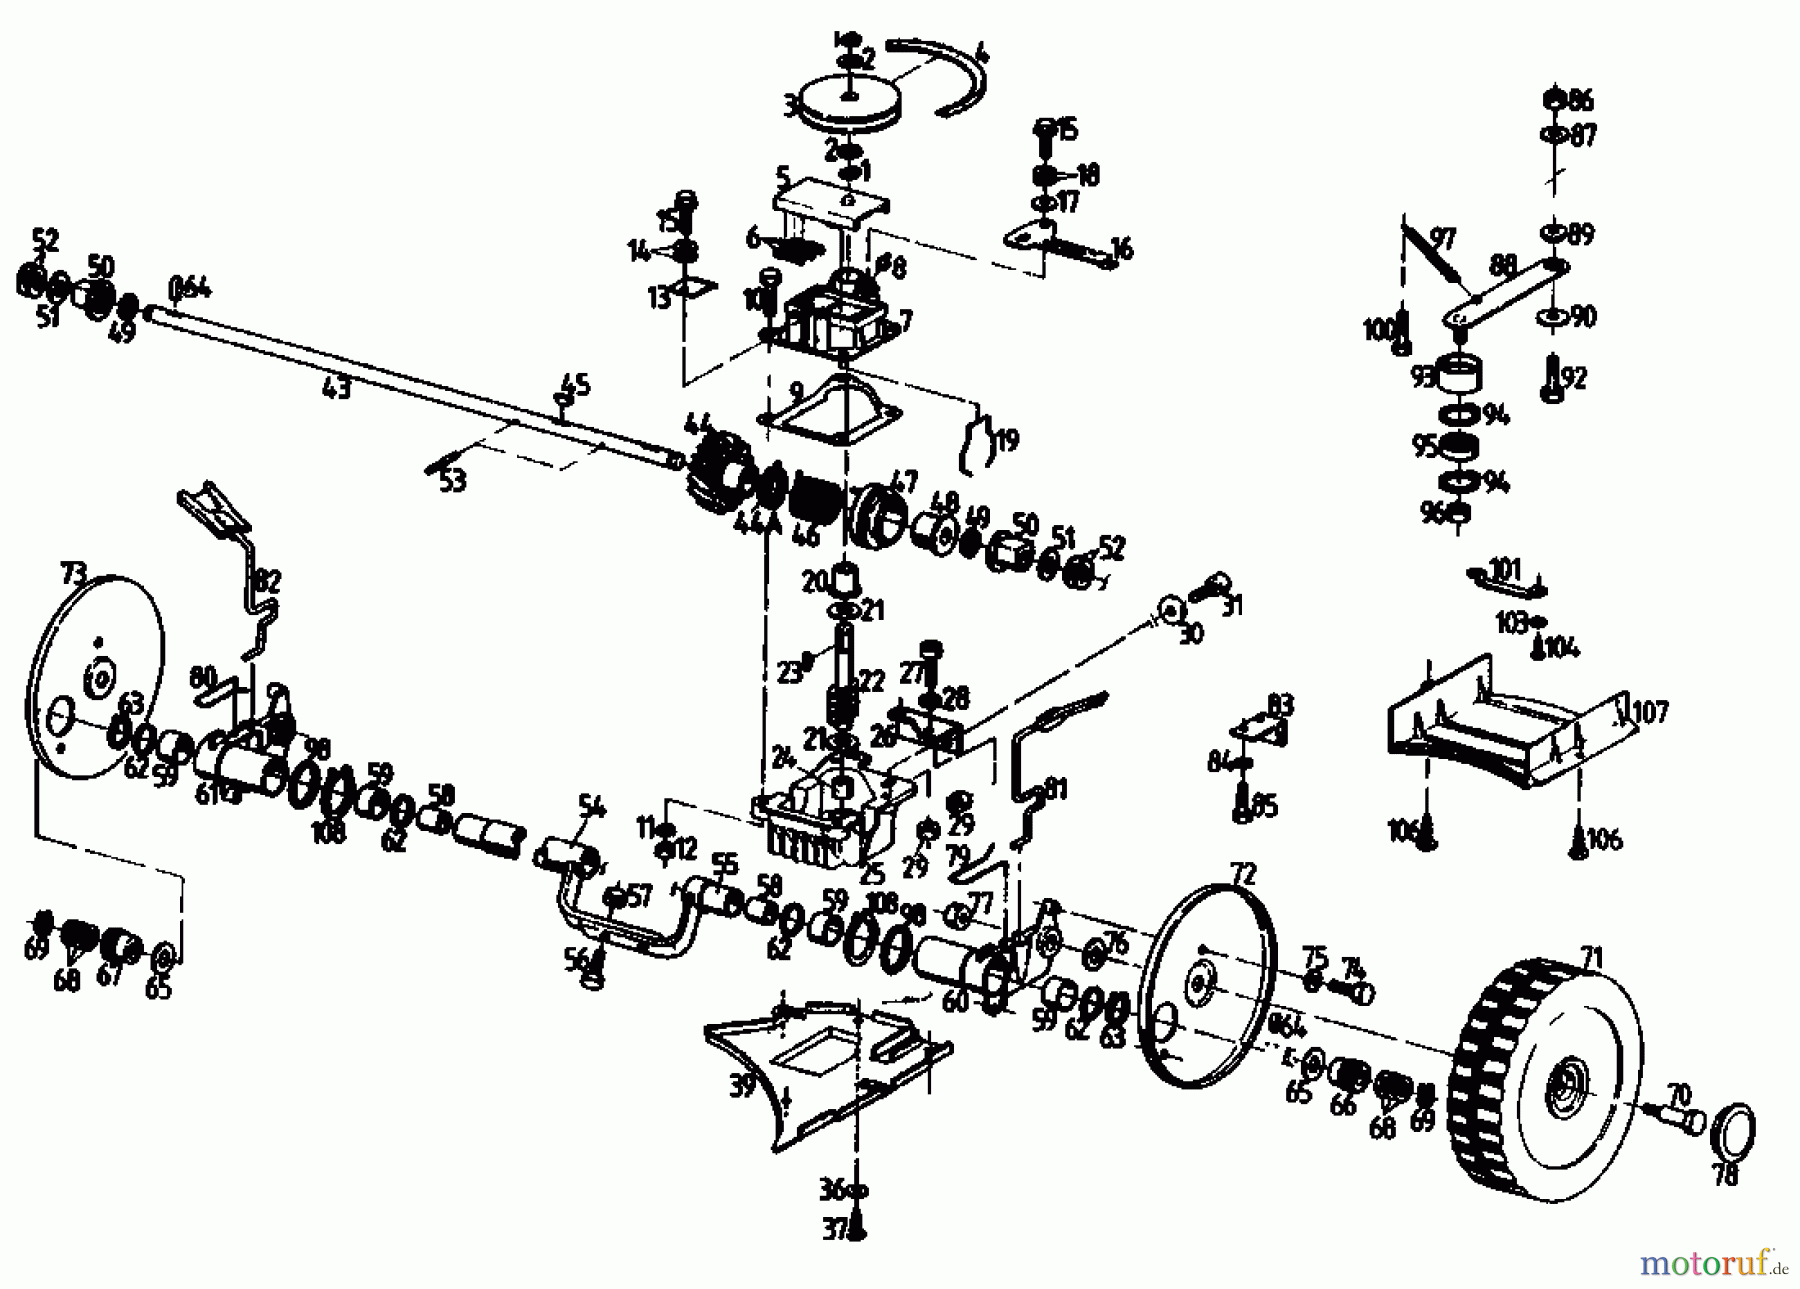  Golf Motormäher mit Antrieb 345 HR 2 T 02847.06  (1989) Getriebe